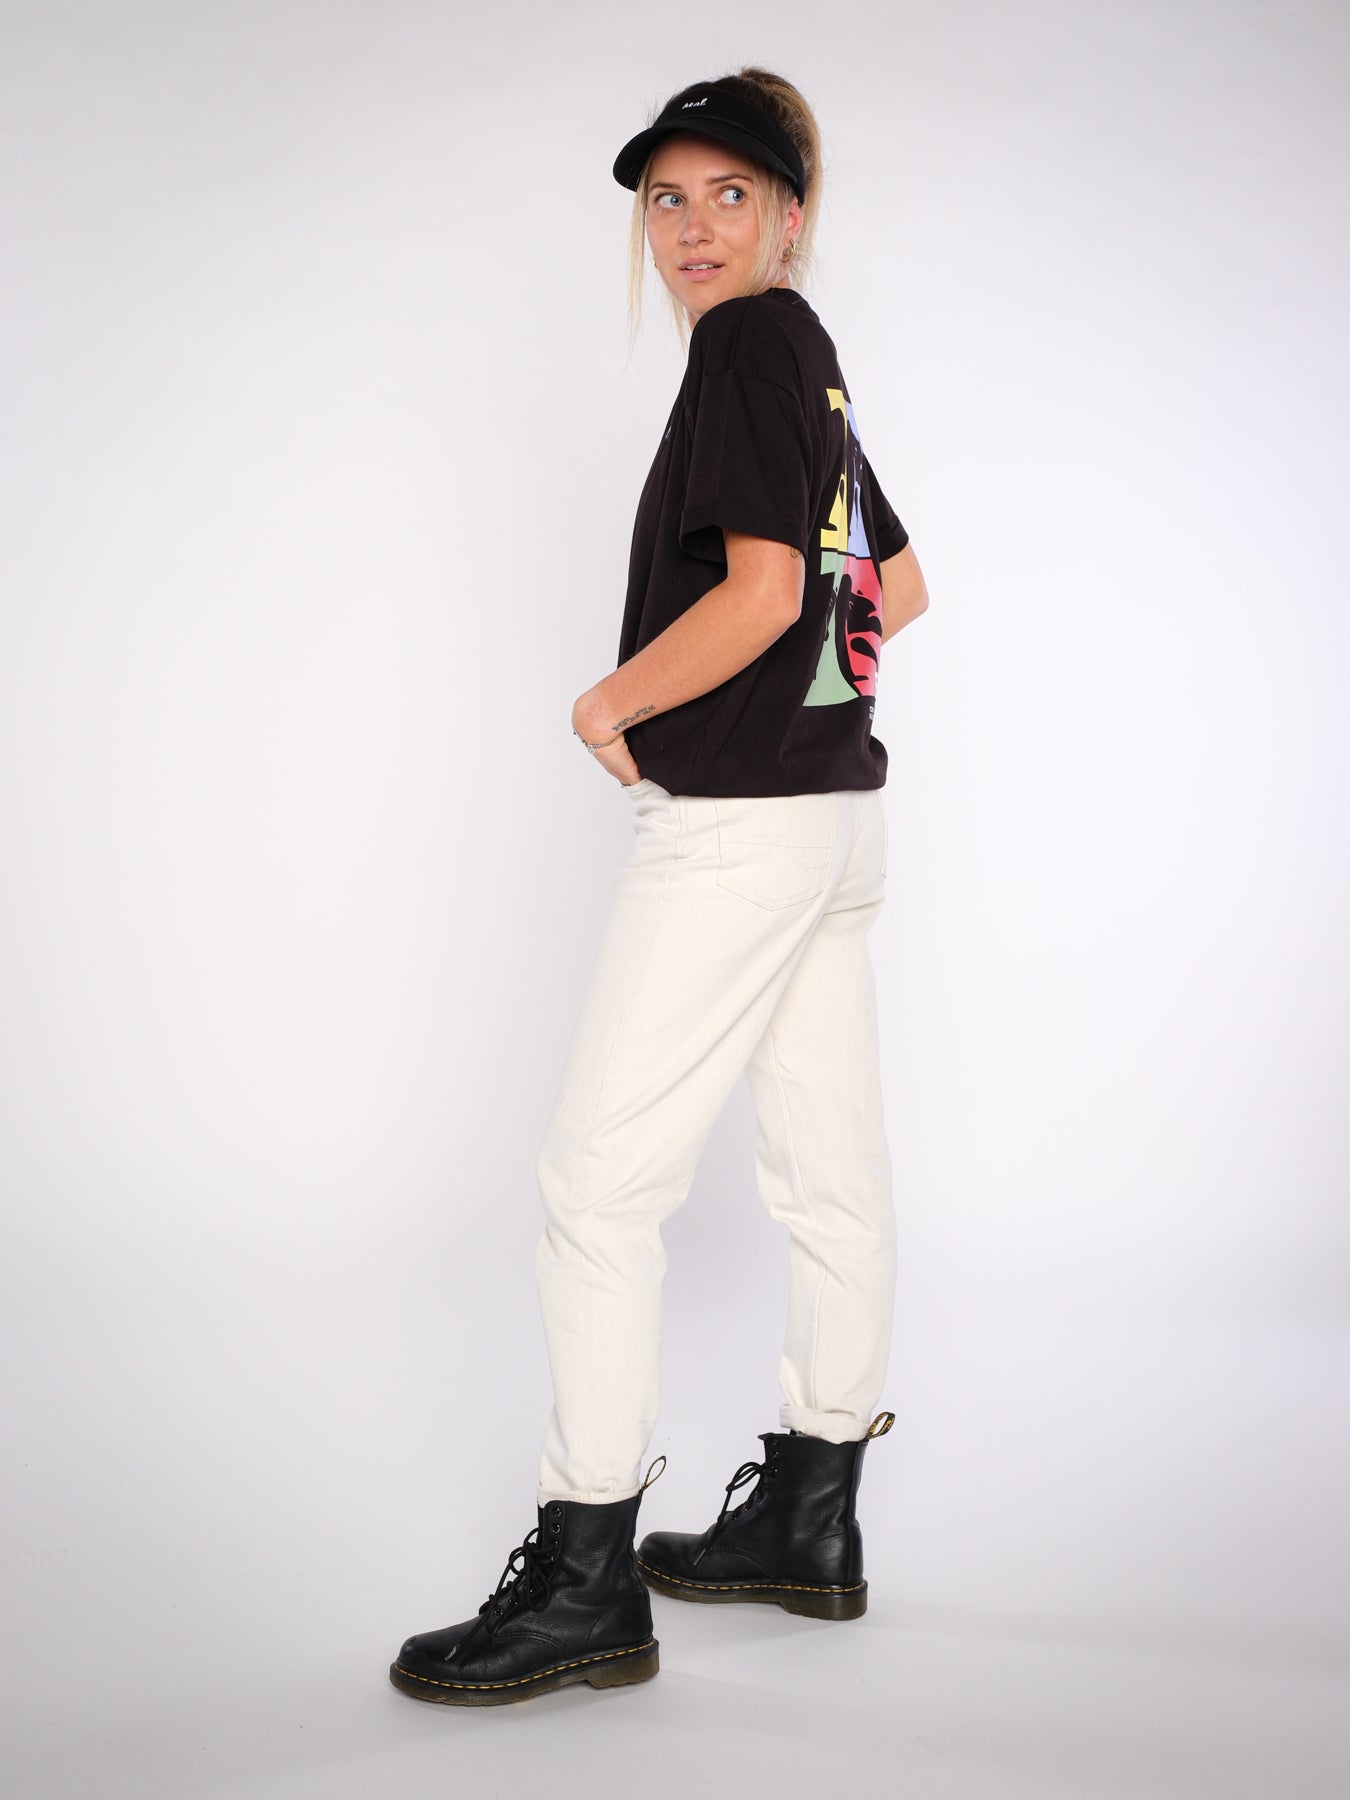 Damen oversized T-Shirt KOMM' WIE DU BIST (schwarz)